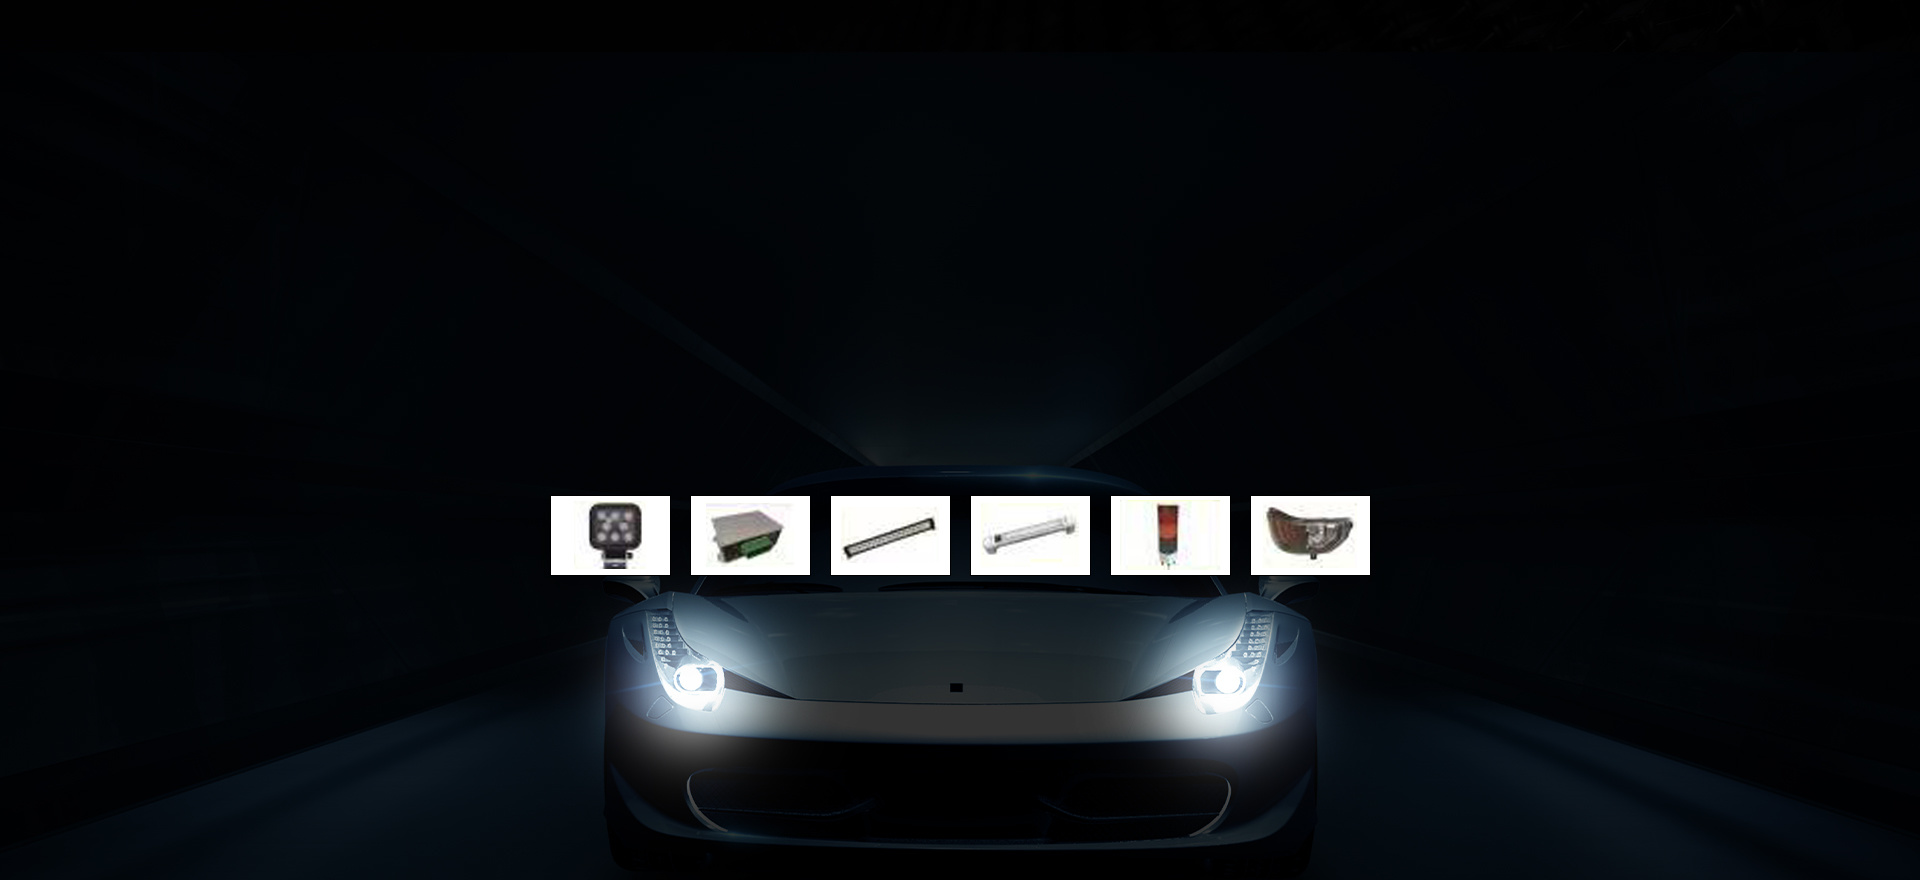 凭借着创新的汽车照明技术和汽车照明解决方案，为广大客户提供安全的、优质的、高性价比的汽车照明产品及方案